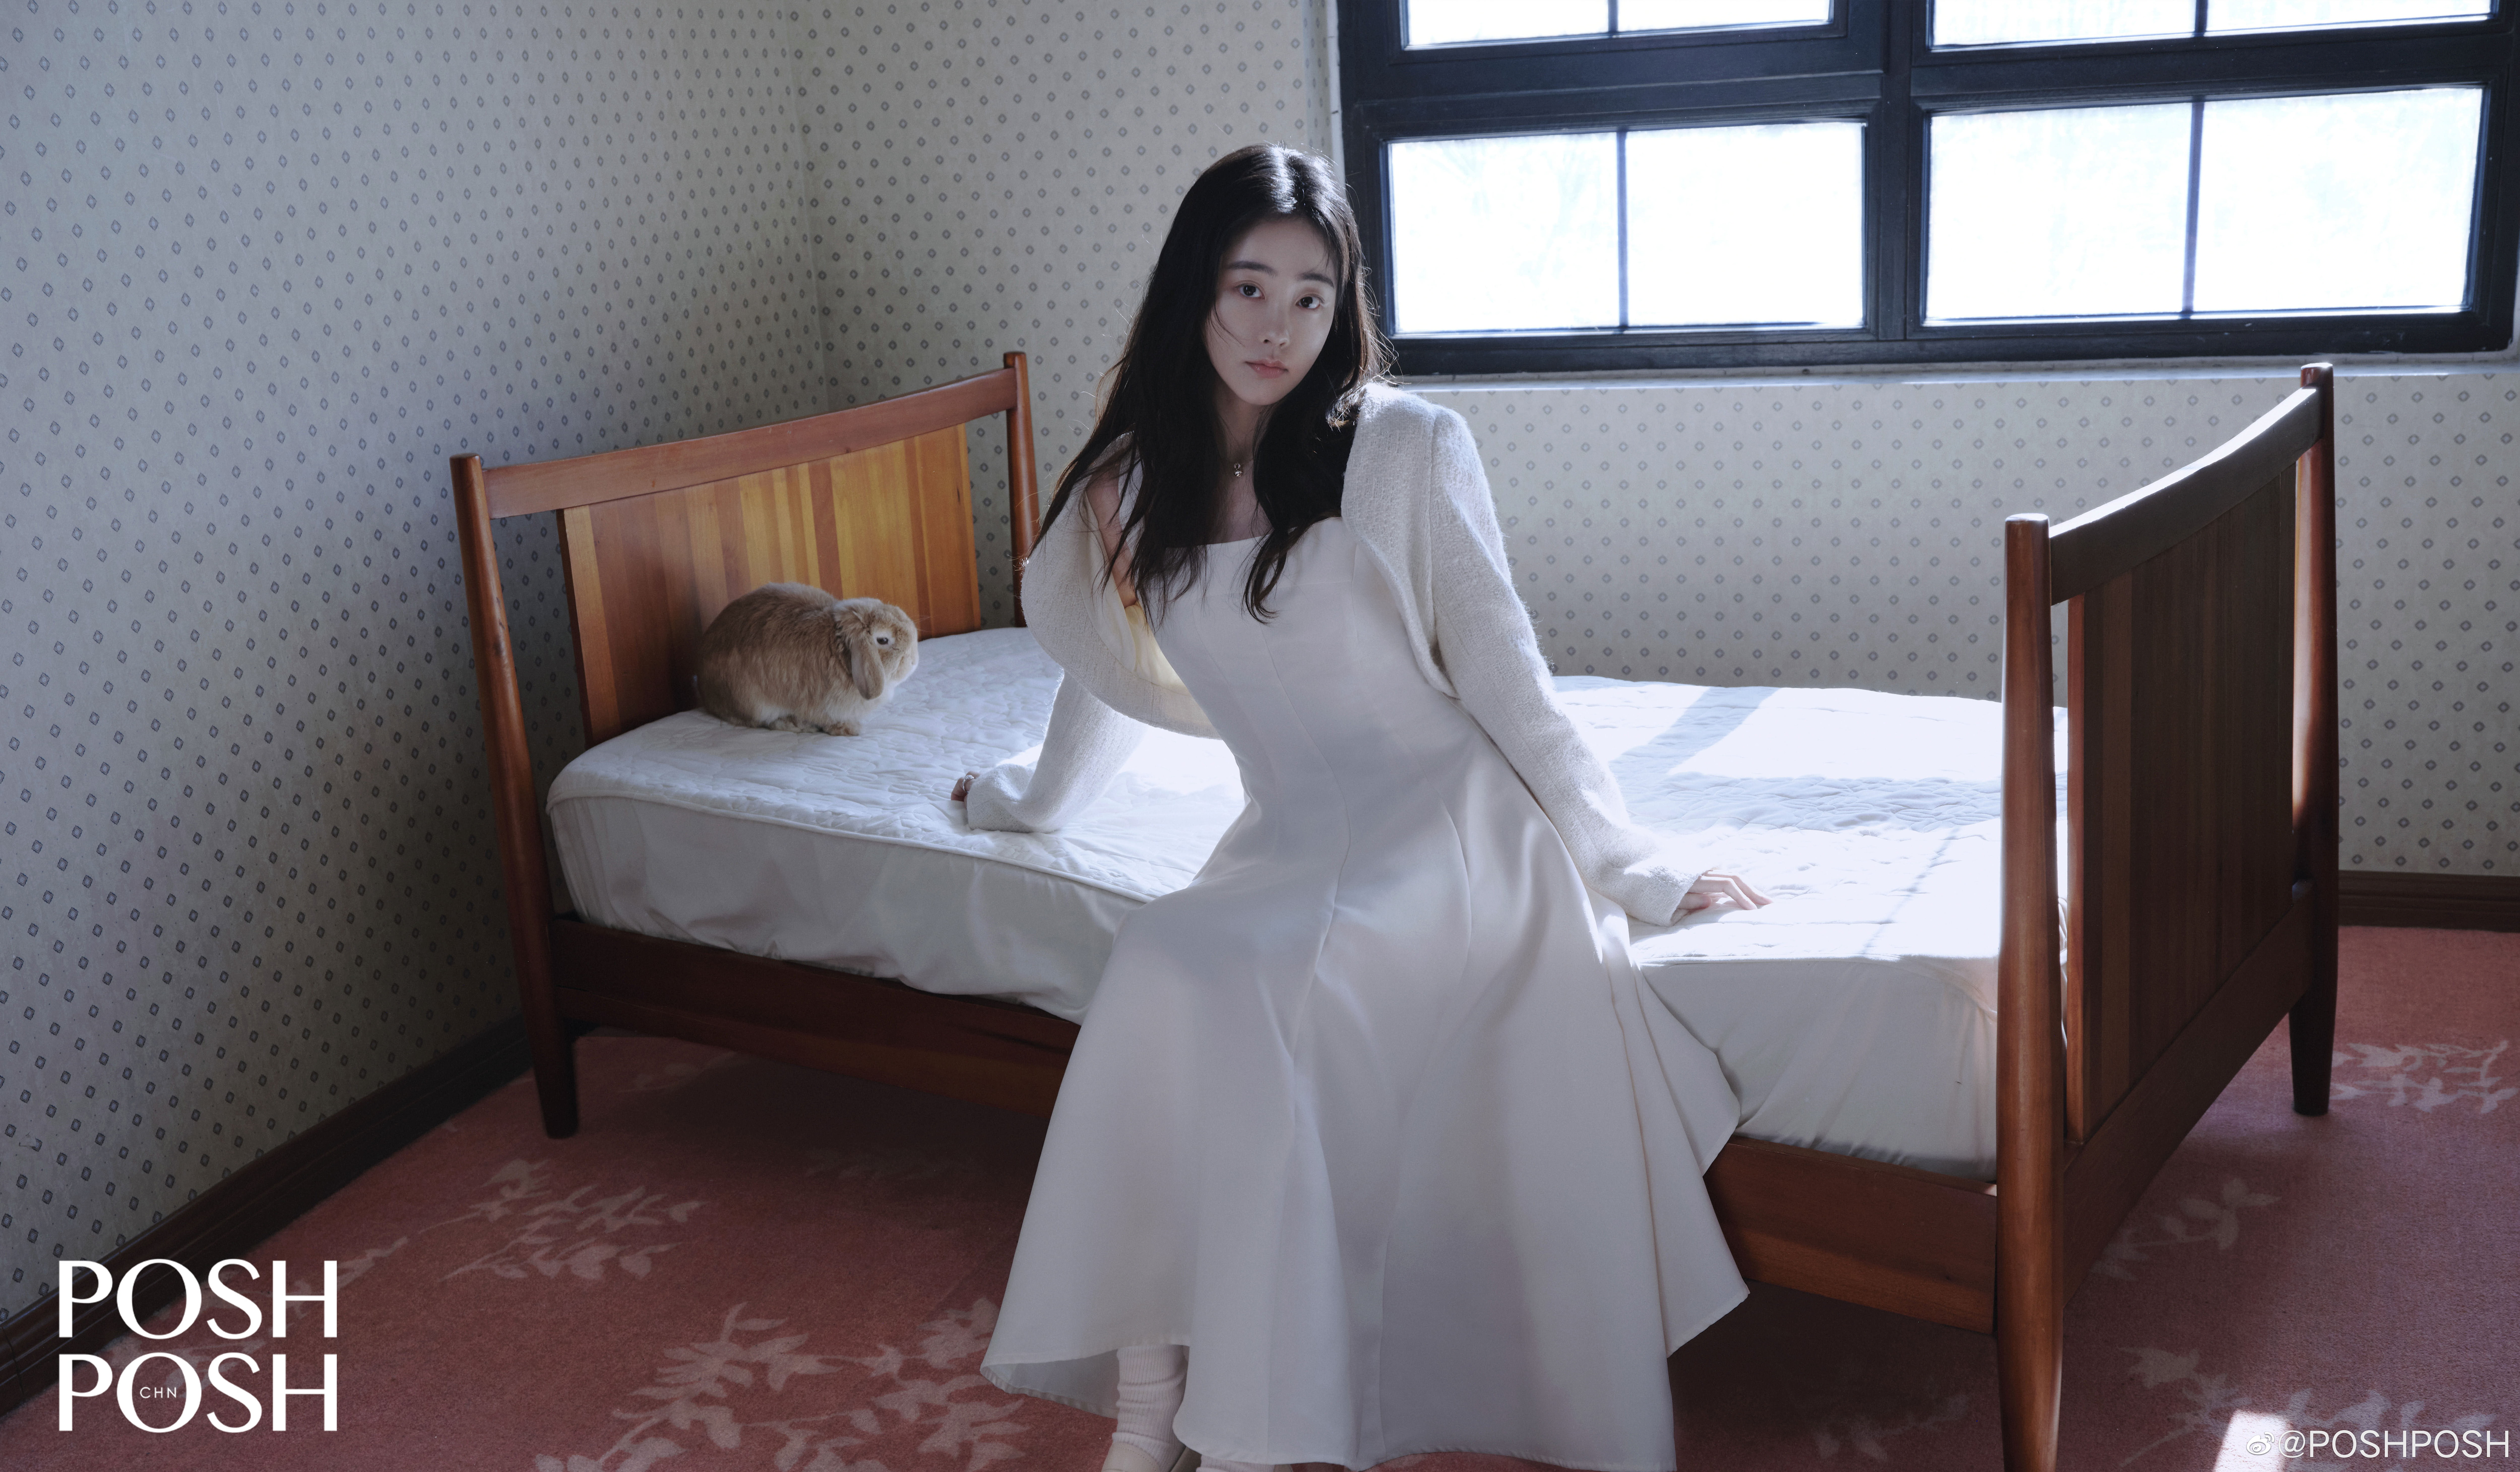 토끼를 옆에 두고 흰색 드레스를 입은 채 침대 위에 앉은 축서단